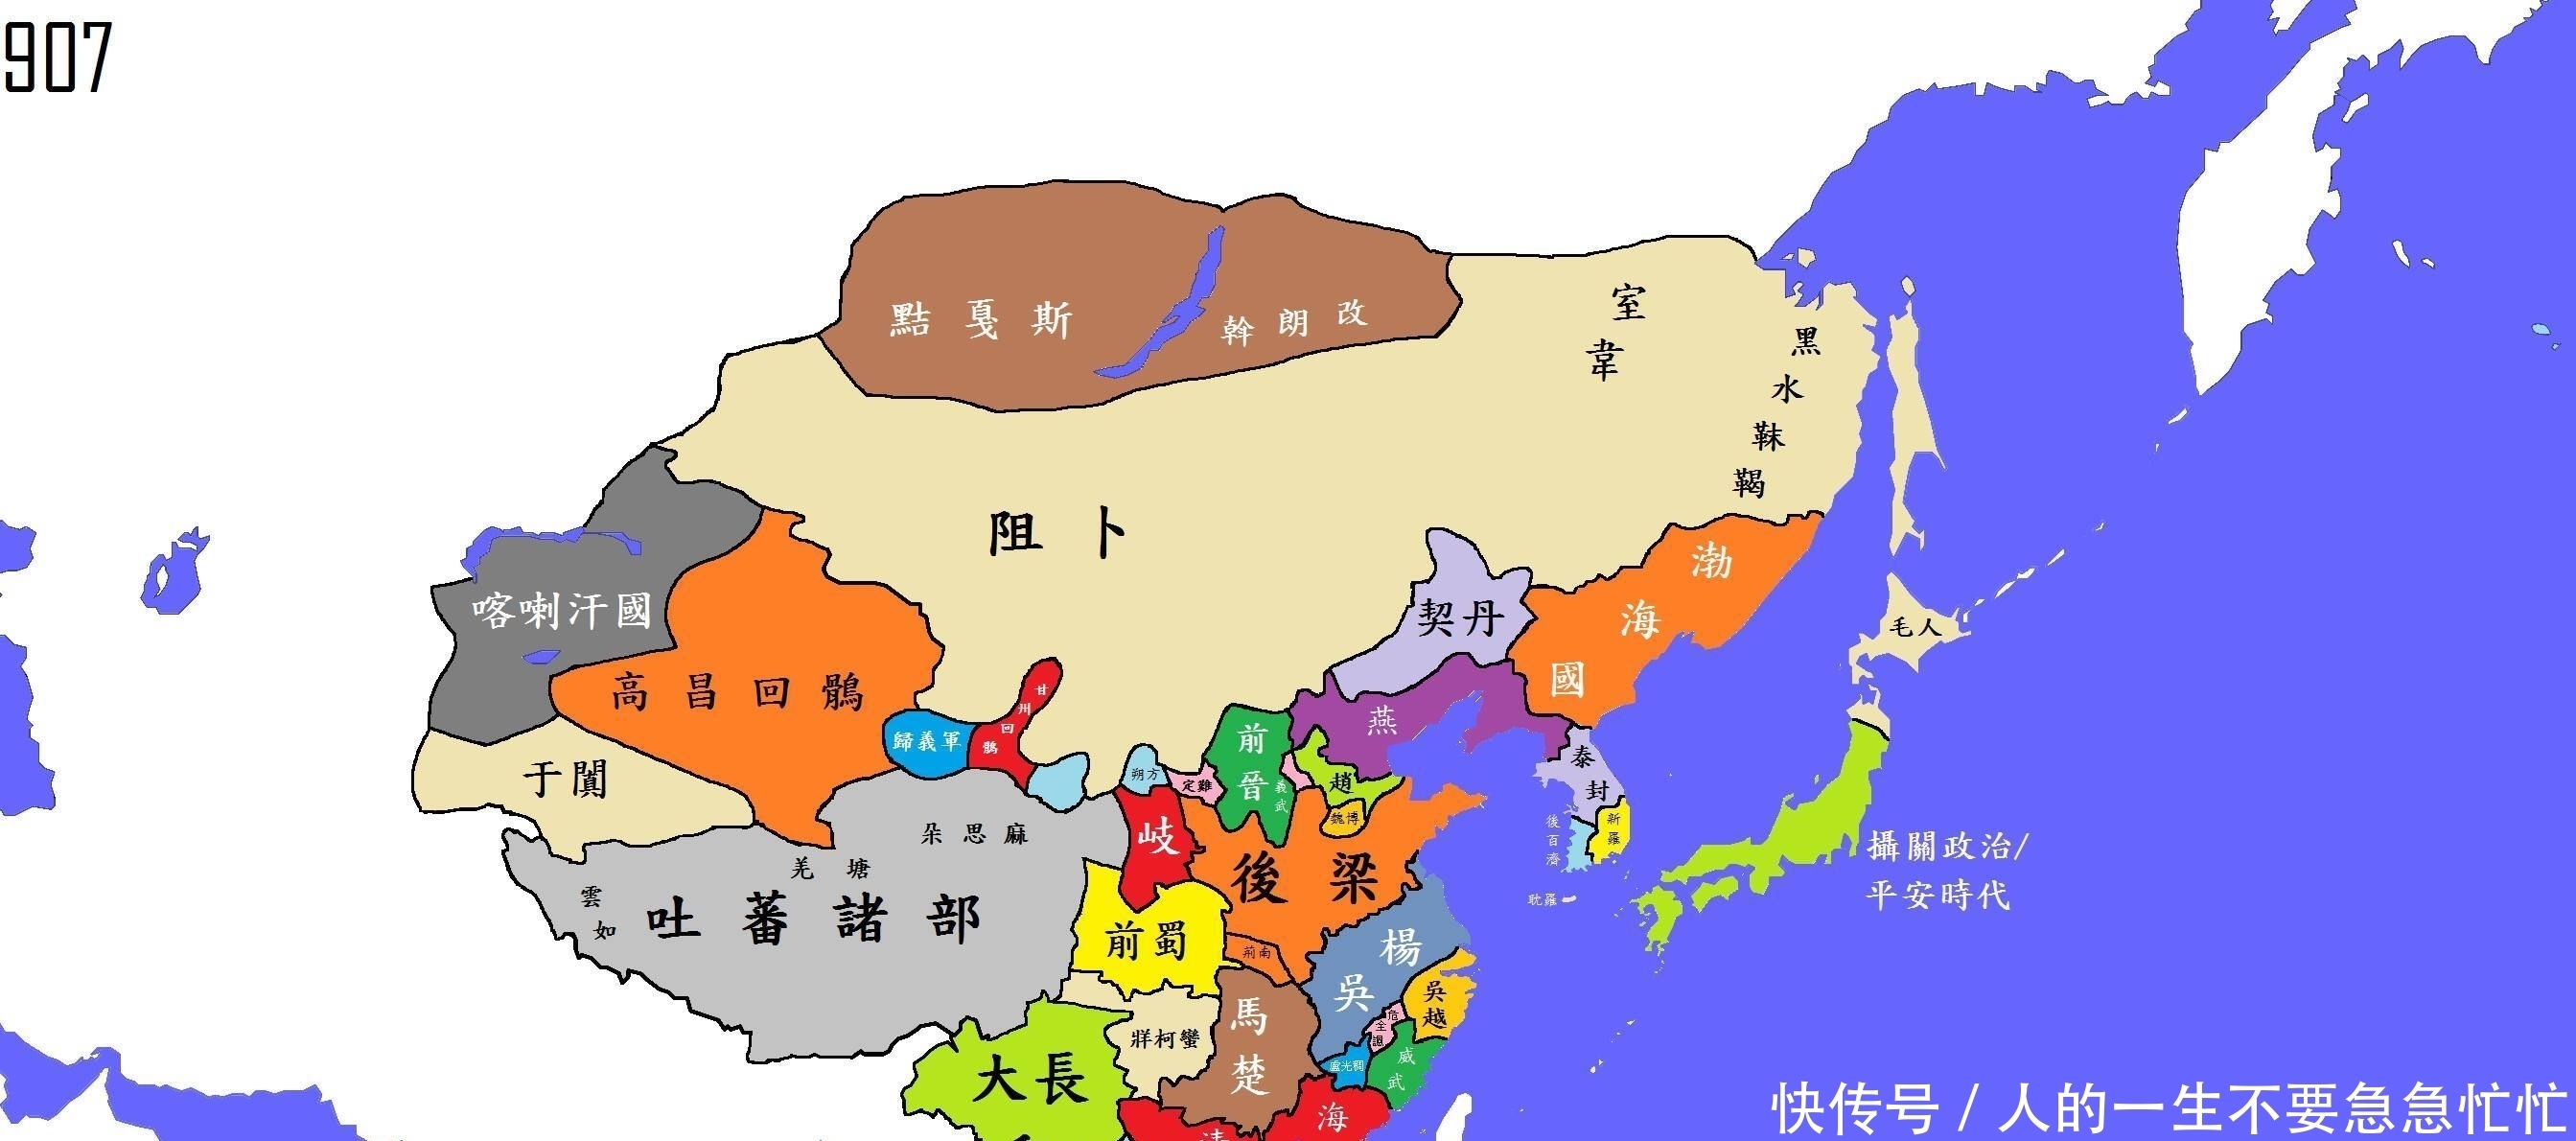 唐朝末年的藩镇割据势力,经过一系列争夺最终演变成五